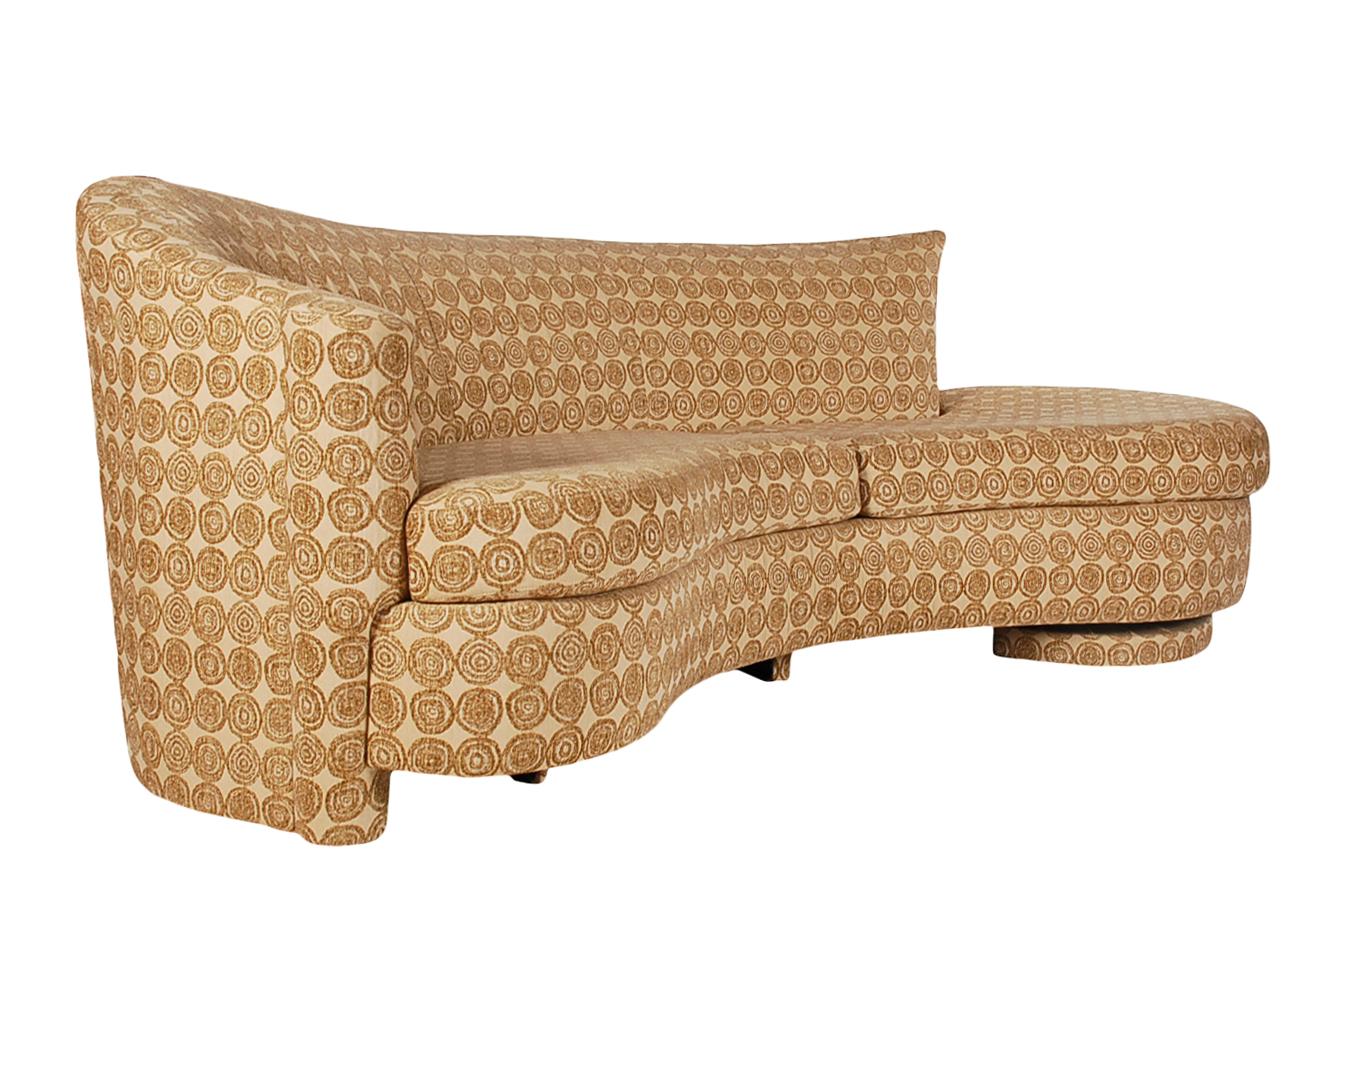 Un magnifique canapé vintage des années 1970 qui rappelle le canapé serpentin. Ce canapé semble être entièrement d'origine avec un tissu d'époque. Etat très propre et prêt à l'emploi.